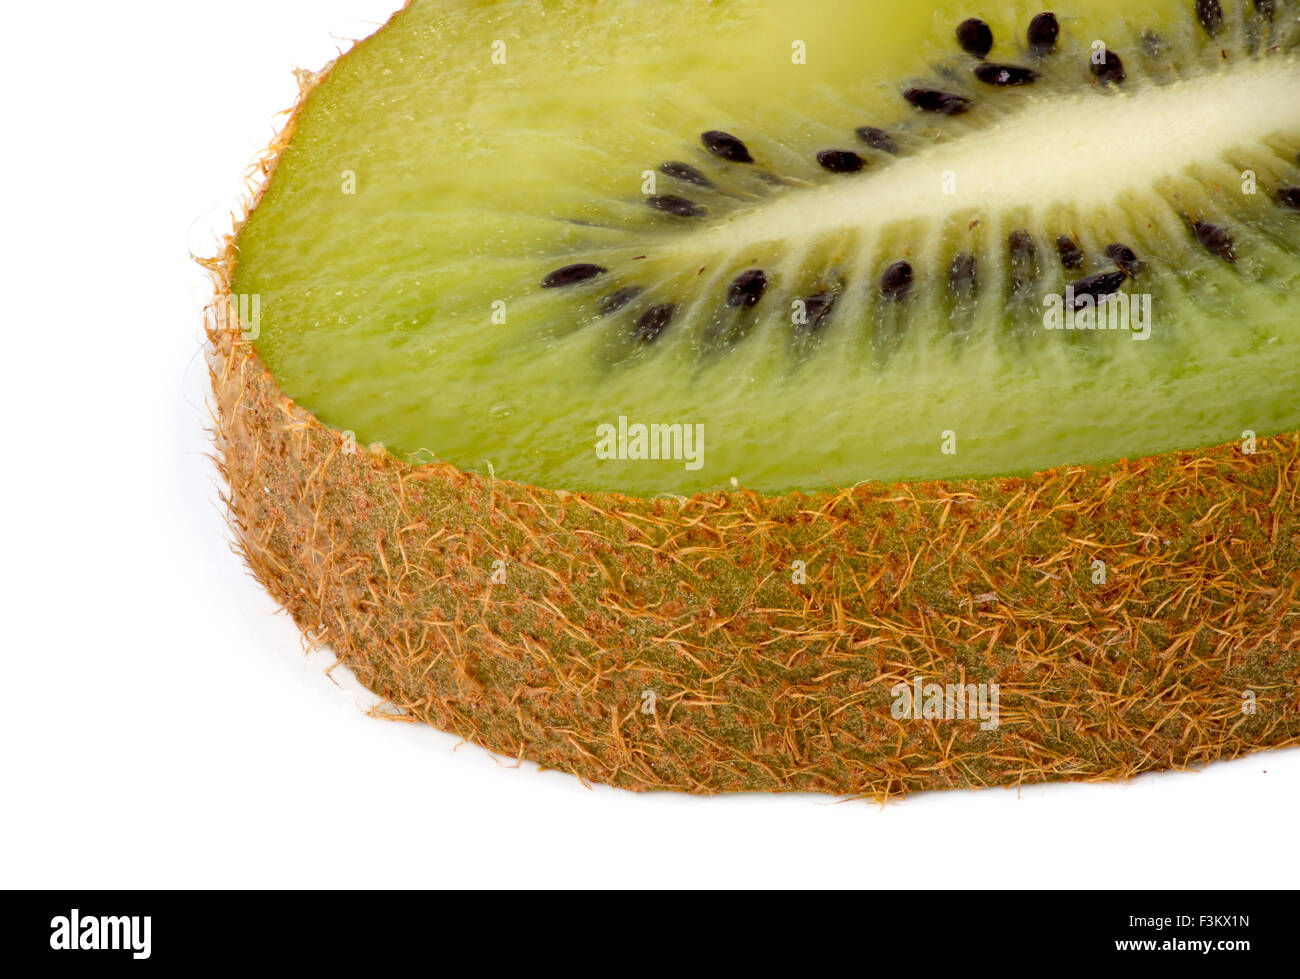 Closeup of slice of kiwi fruit against white background Stock Photo